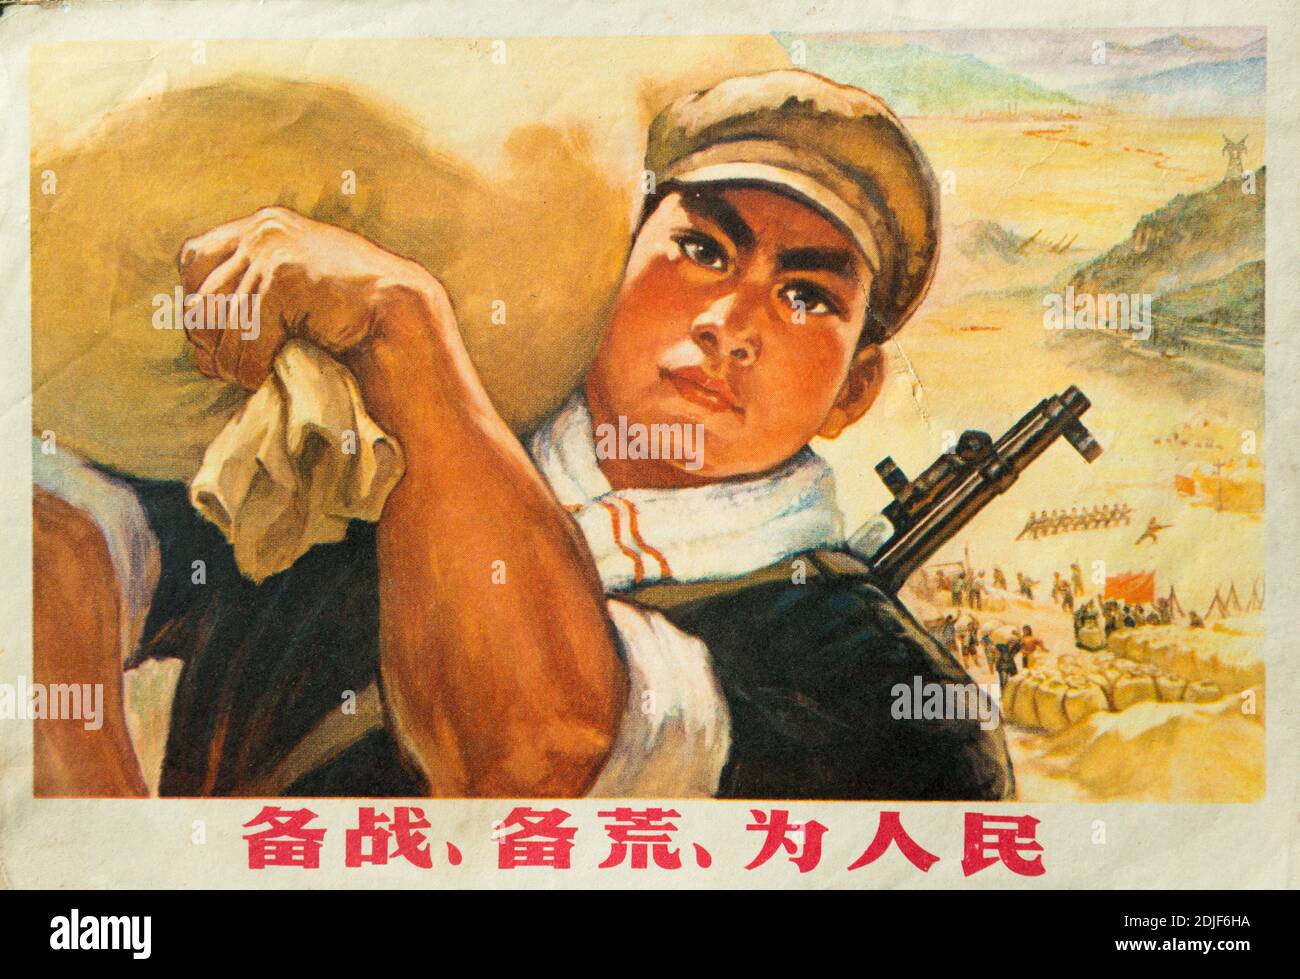 Une véritable affiche de propagande pendant la Révolution culturelle en Chine. Les caractères chinois se lisent comme suit : soyez préparé contre la guerre soyez préparé contre la nature Banque D'Images